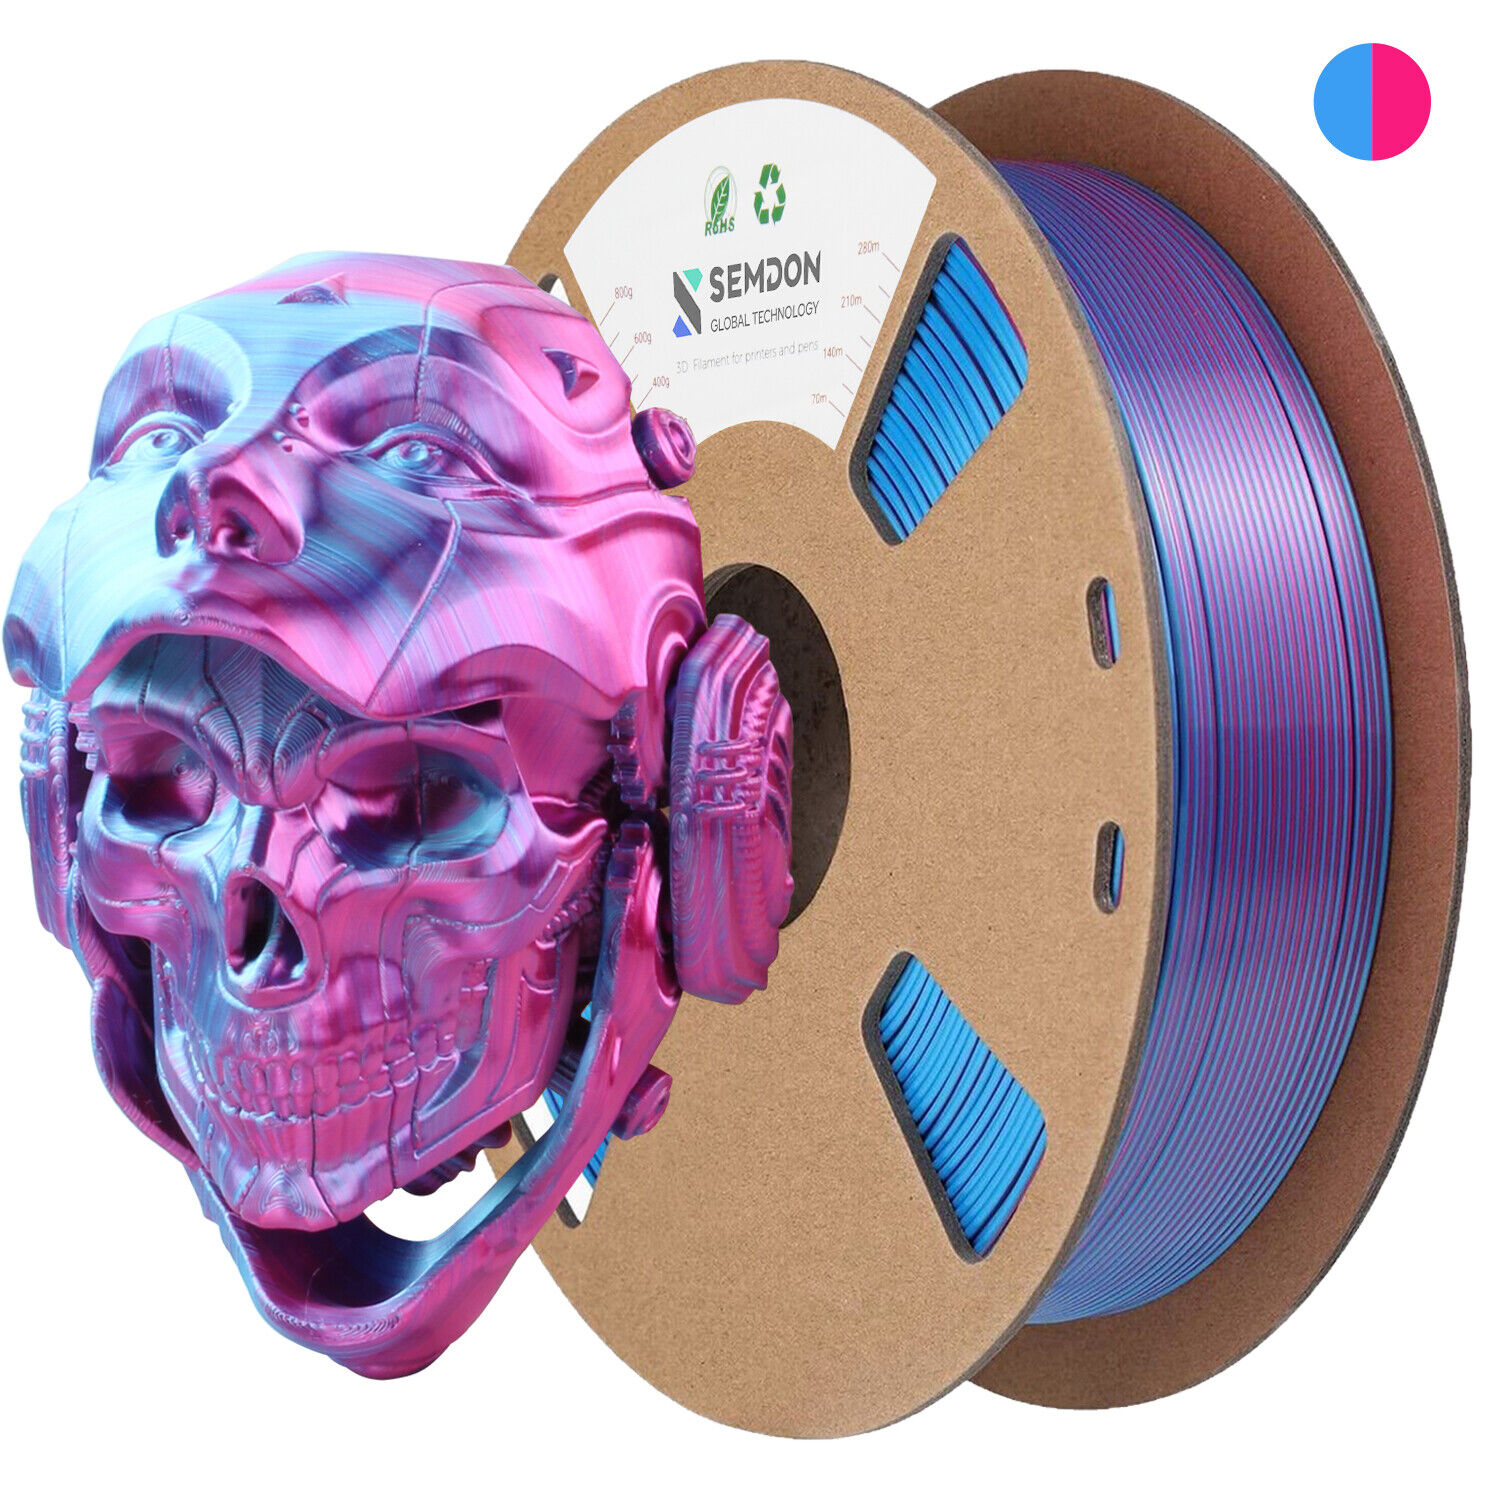 Semdon 3D Printer Filament PLA 1.75mm 1KG Bundle Multicolor Rainbow Glow Lot US